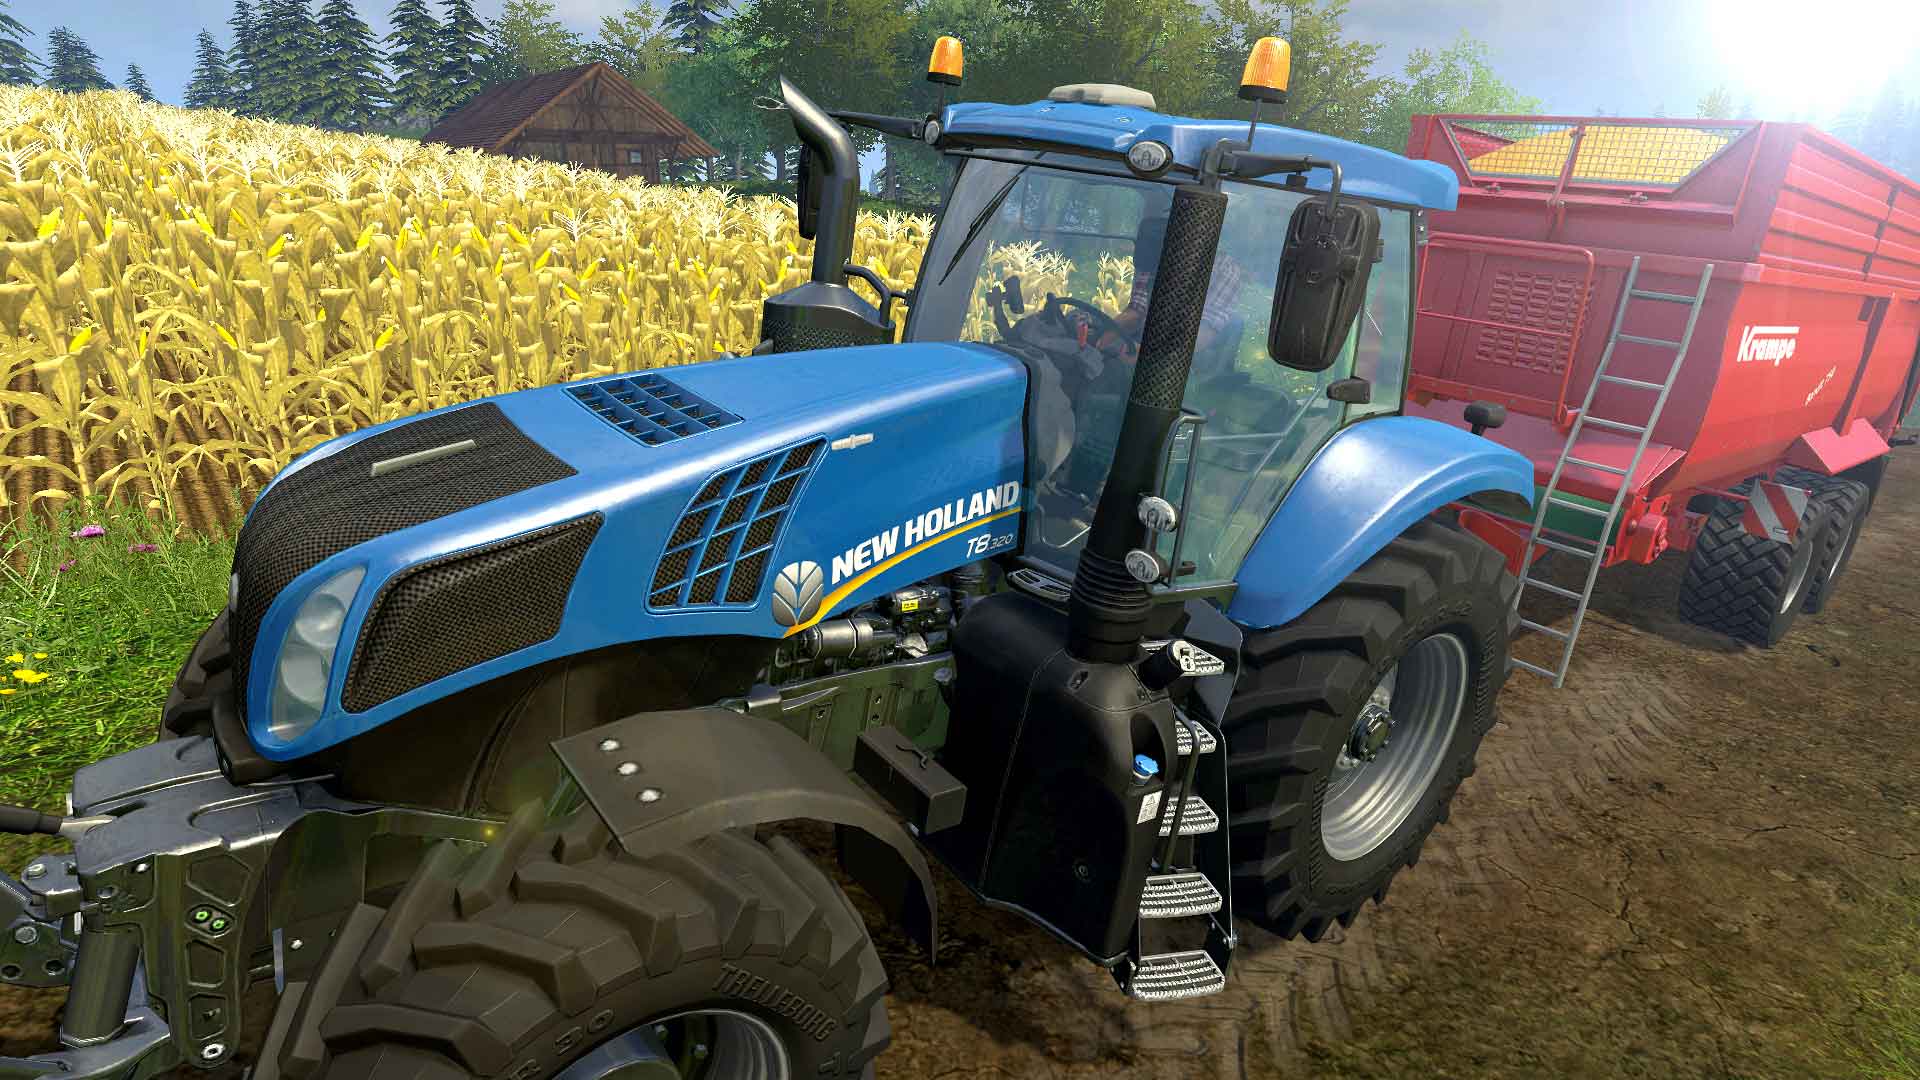 Farming Simulator 15 Download